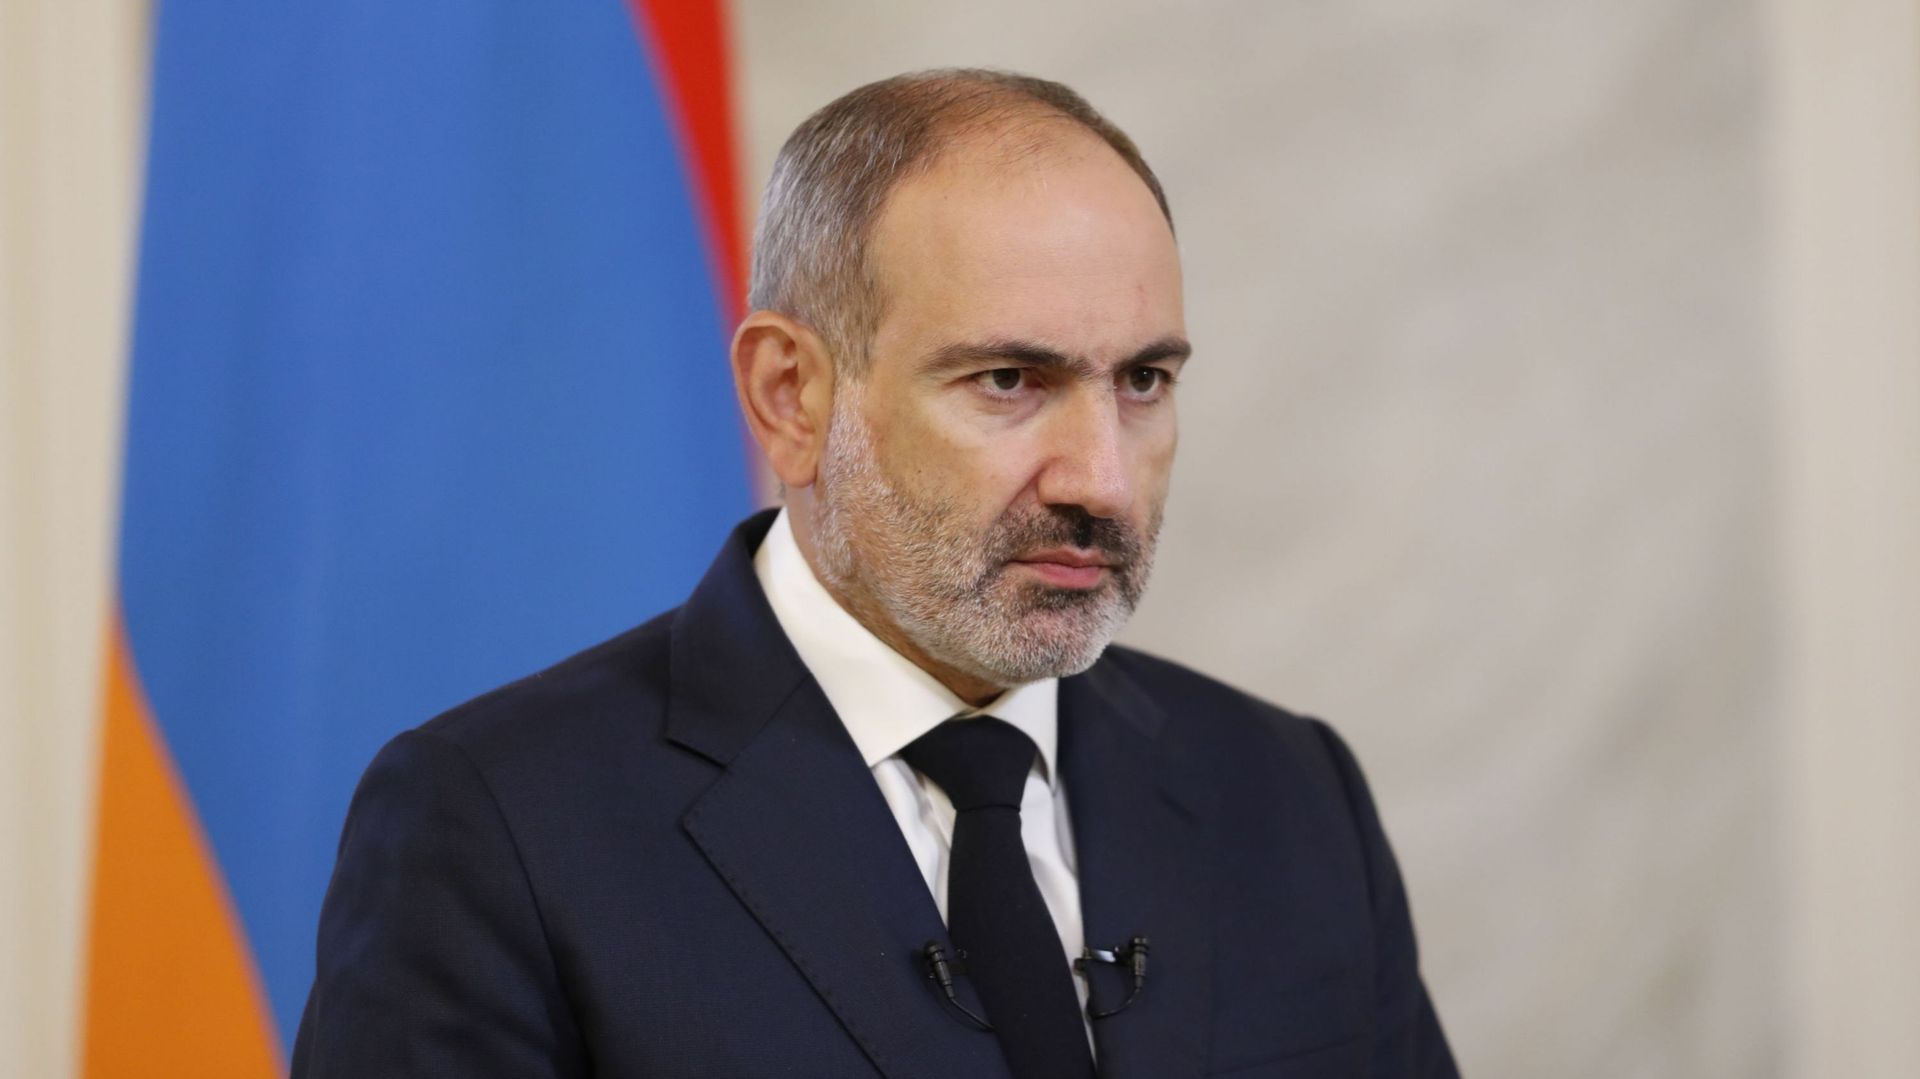 Haut-Karabakh : l’Arménie se dit prête à des concessions, mais en exige aussi de l’Azerbaïdjan